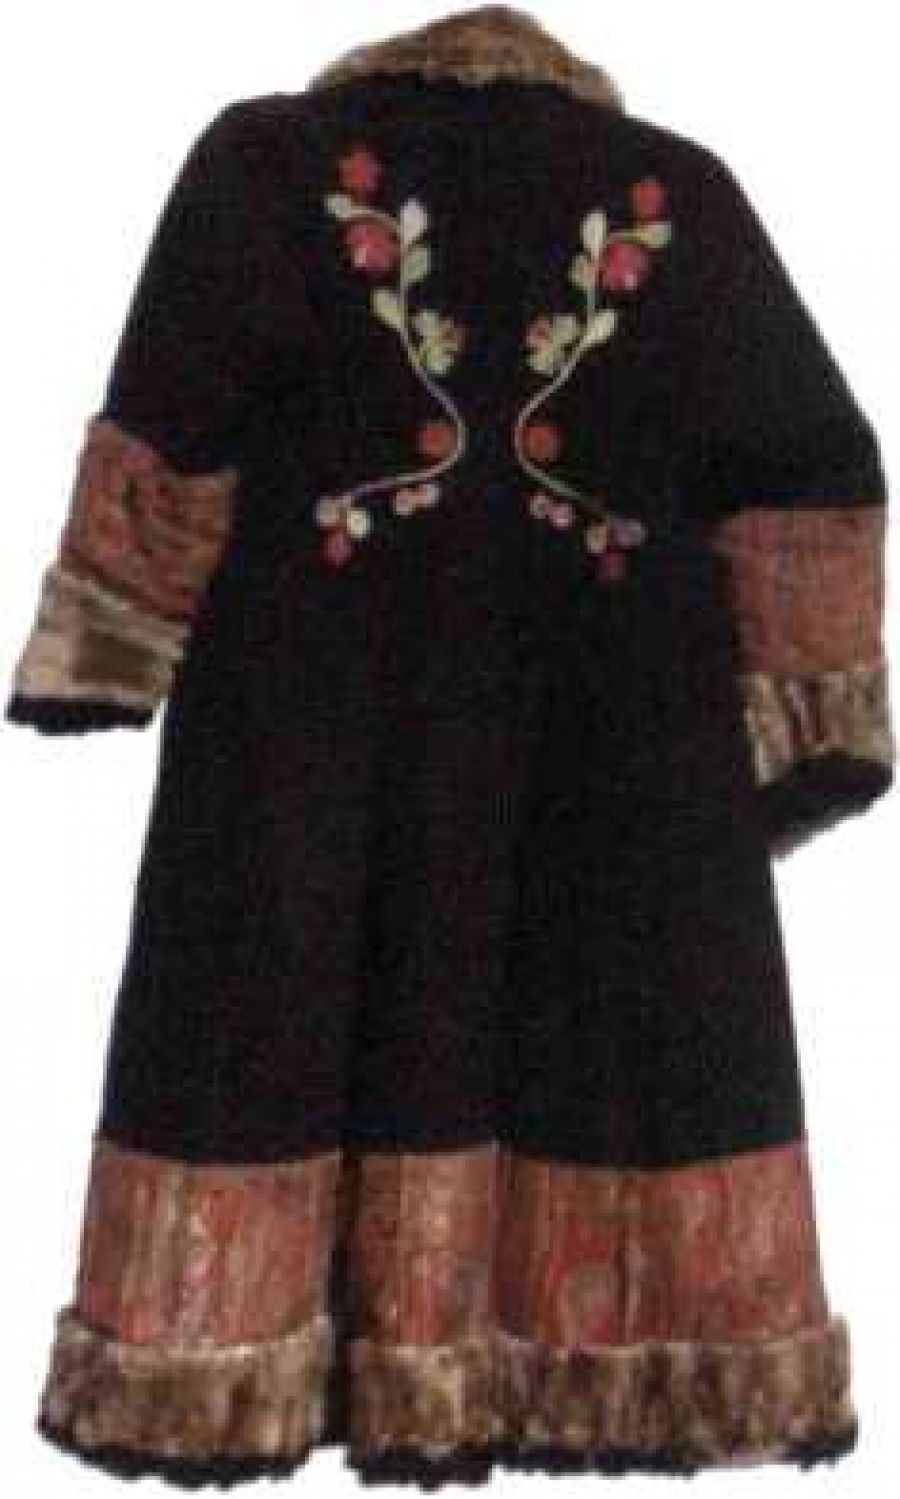 Вышивка на женских праздничных шубах сагайцев и кызыпьцев  - М. П. Чебодаева